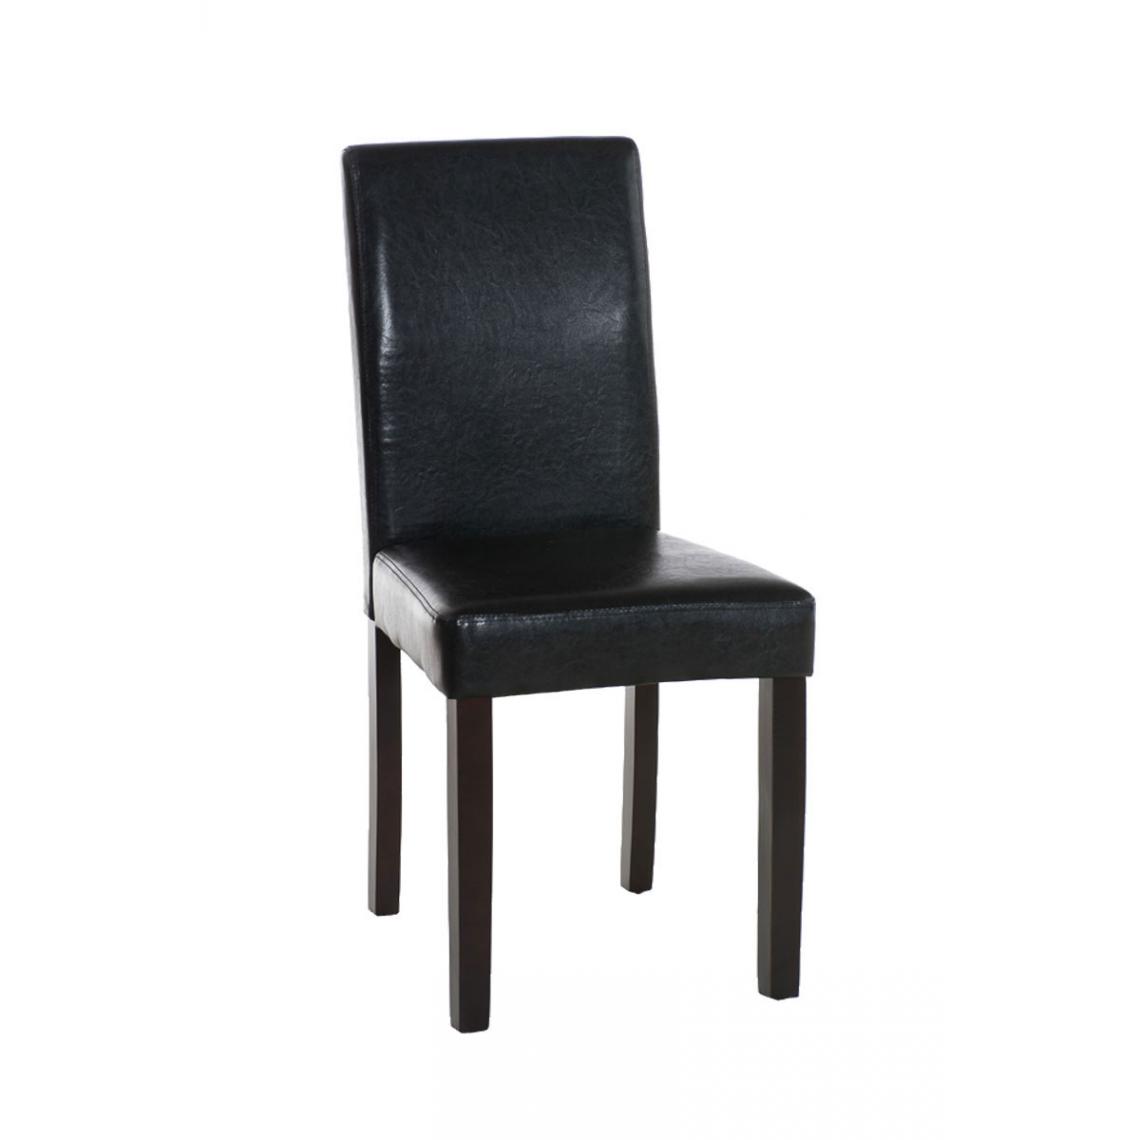 Icaverne - Admirable Chaise de salle à manger gamme Rabat marron foncé couleur noir - Chaises